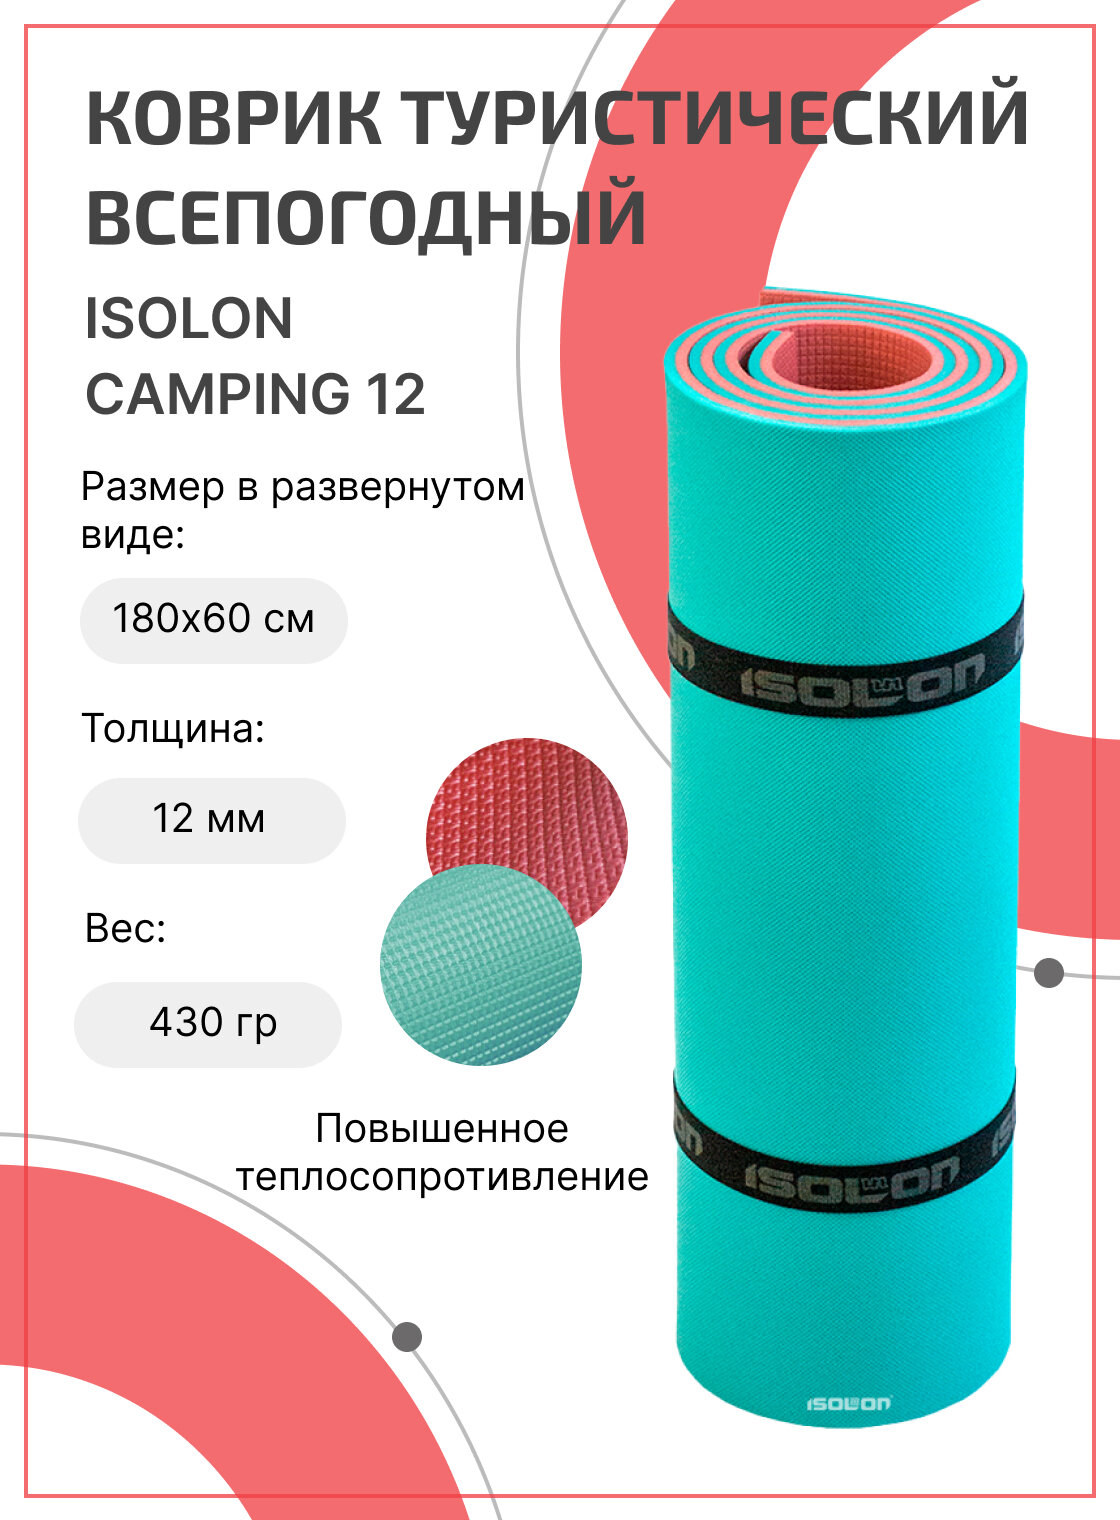 Коврик для активного отдыха и спорта Isolon Camping 12 мм 180х60 см